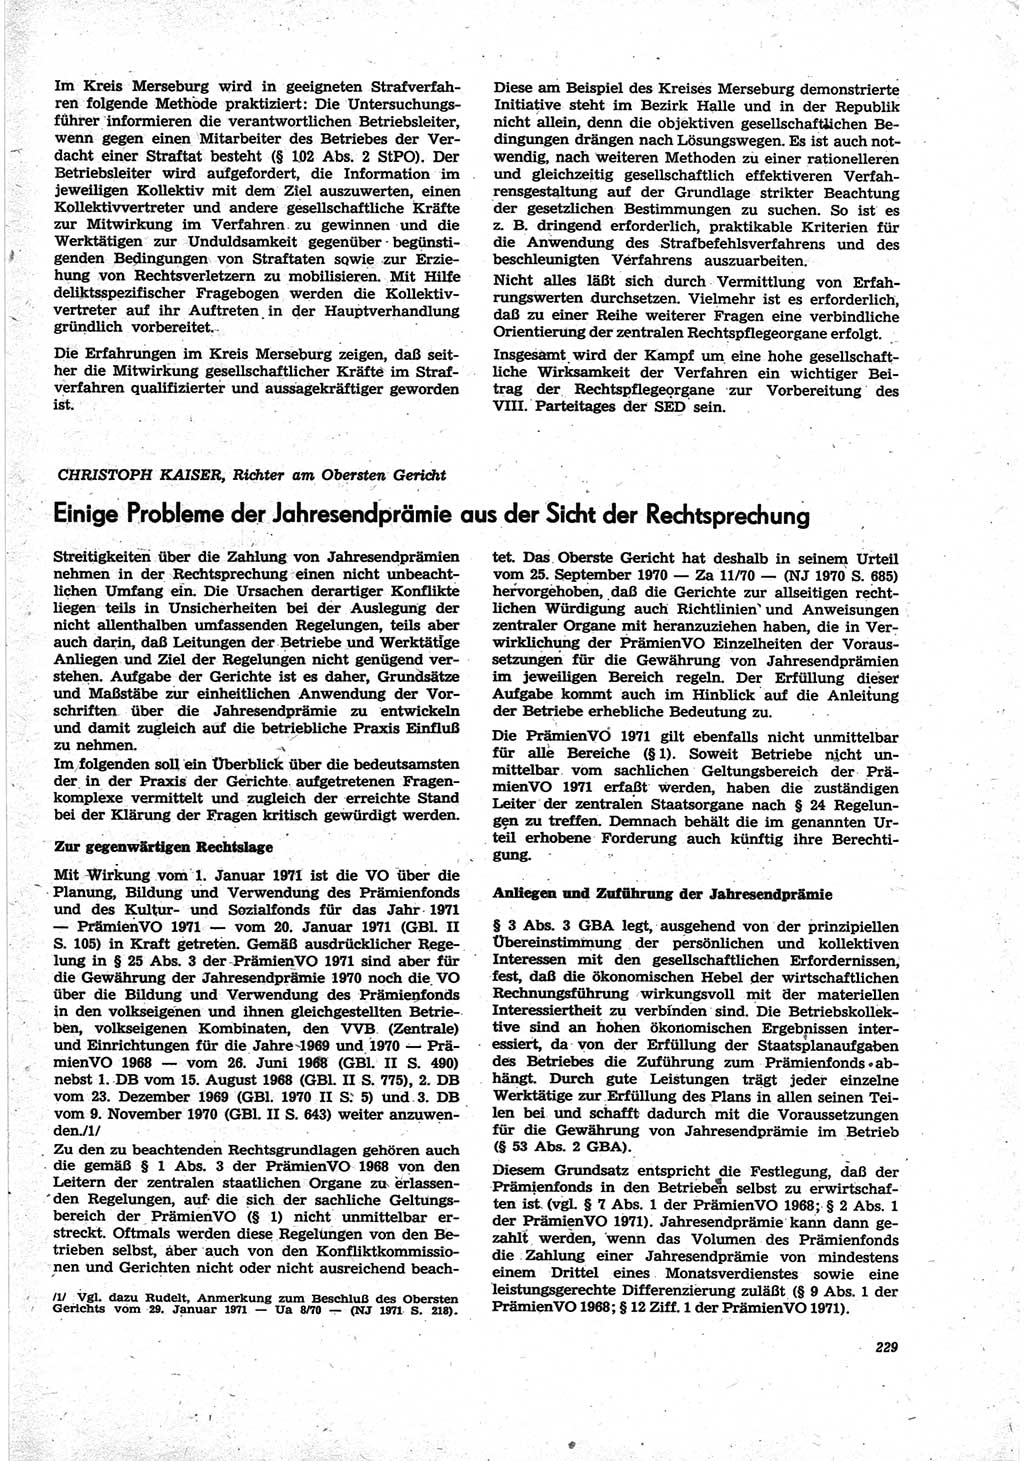 Neue Justiz (NJ), Zeitschrift für Recht und Rechtswissenschaft [Deutsche Demokratische Republik (DDR)], 25. Jahrgang 1971, Seite 229 (NJ DDR 1971, S. 229)